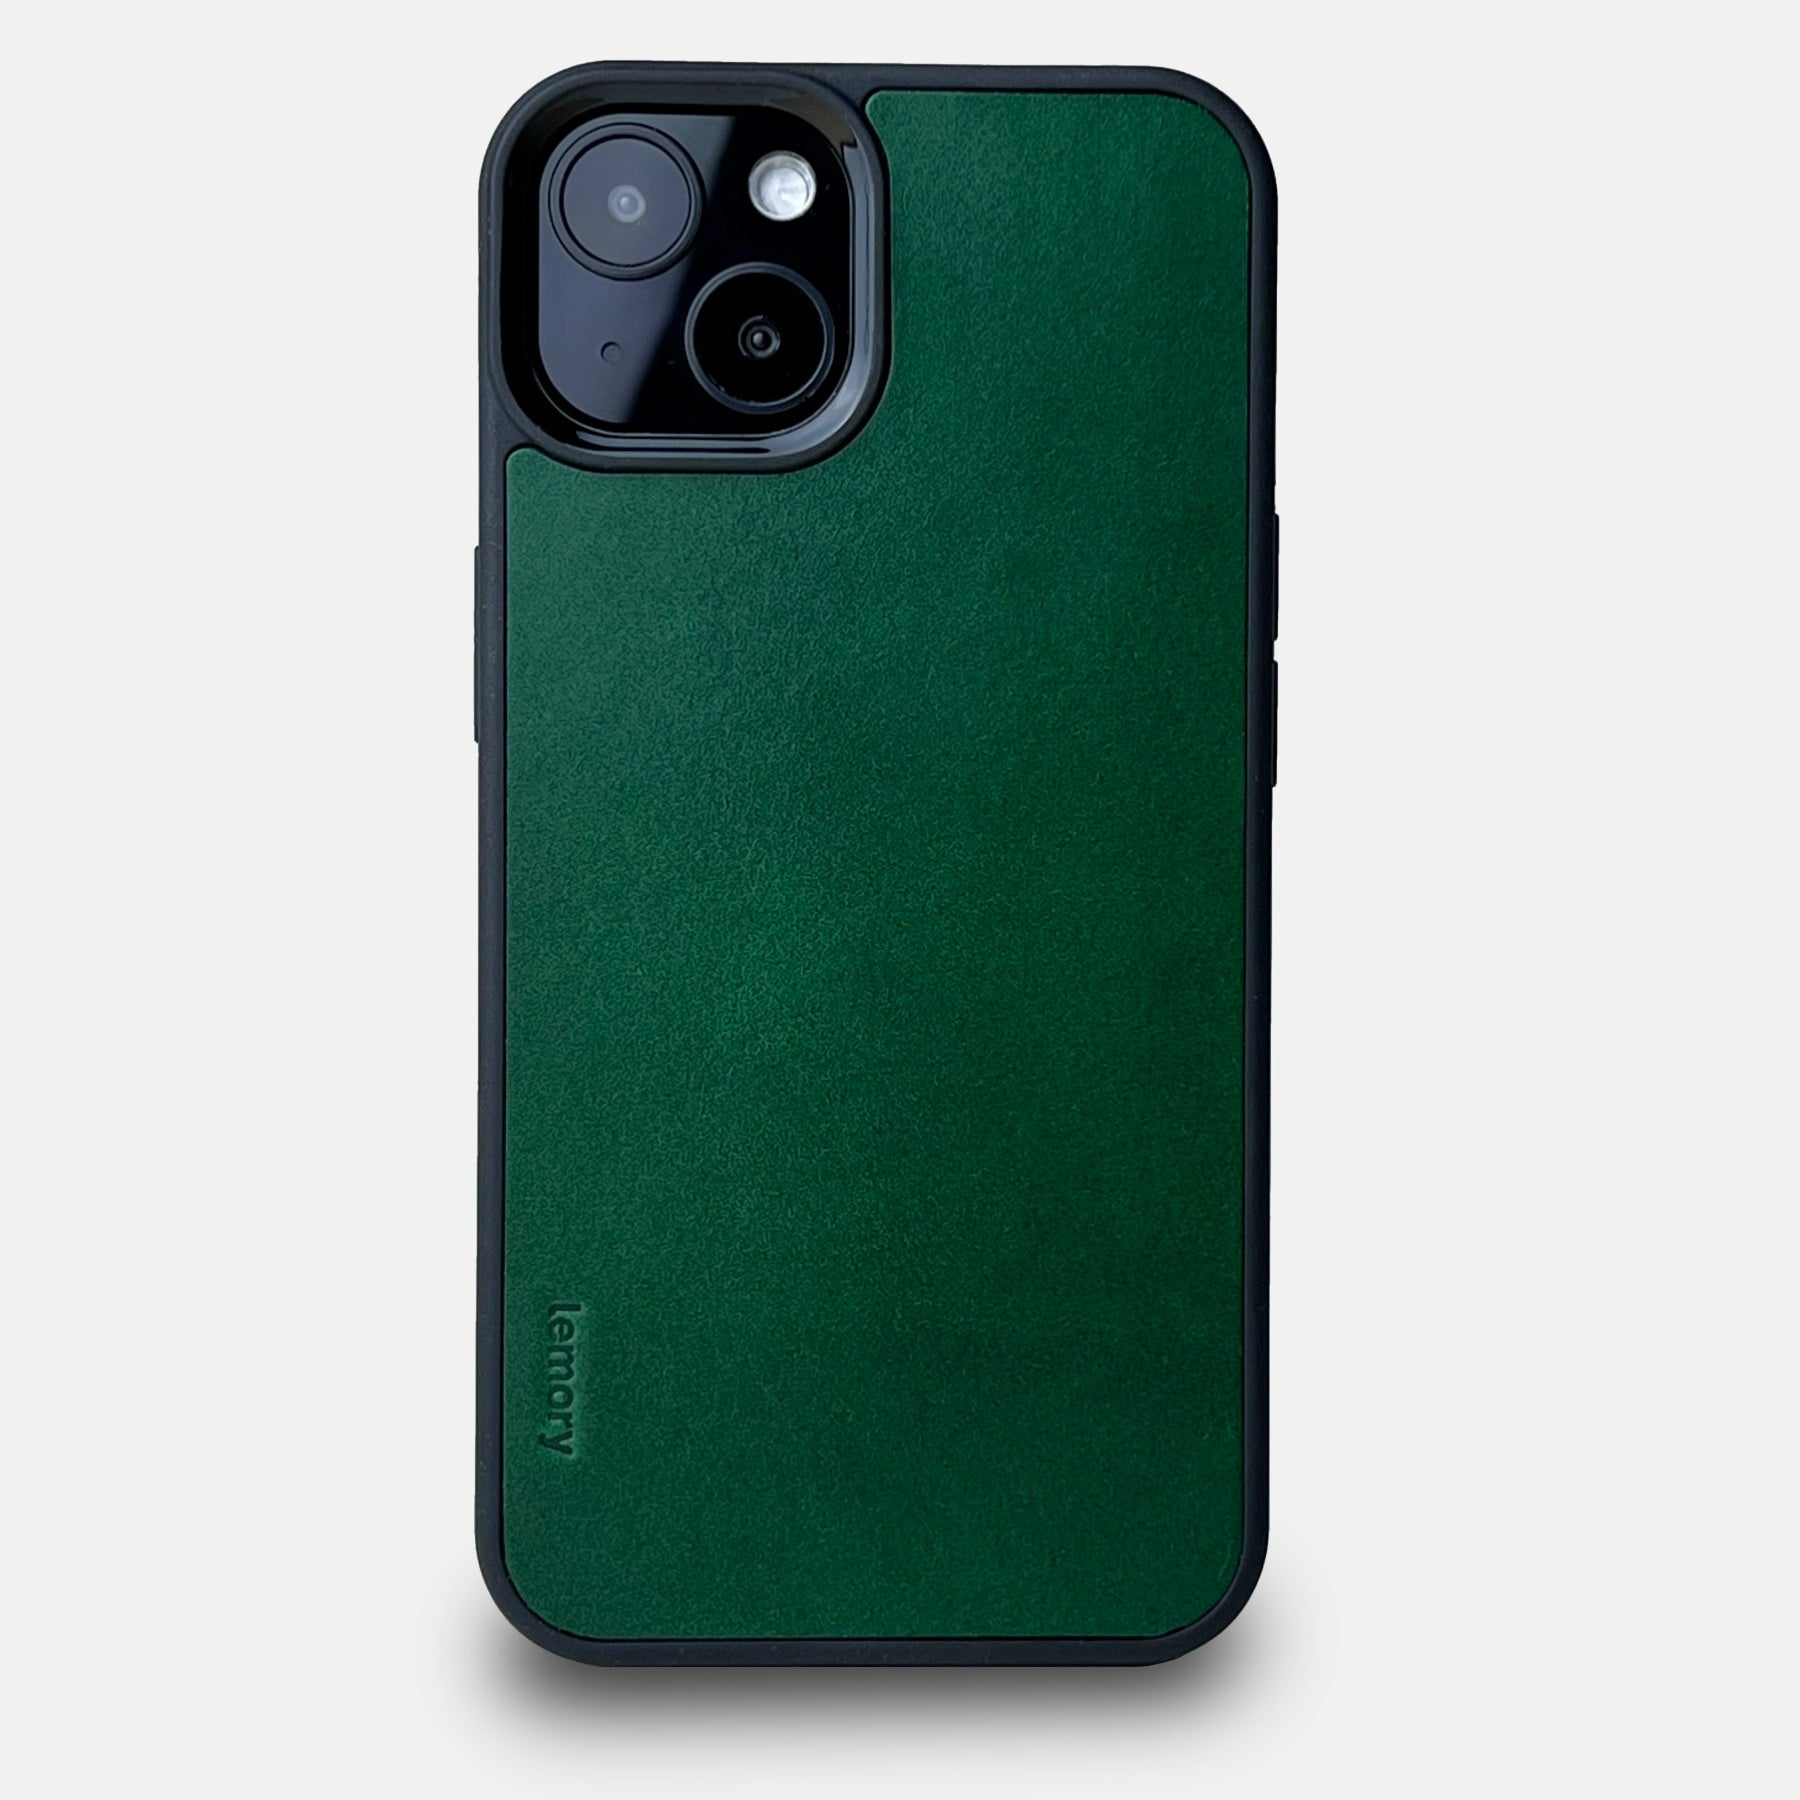 Prémiový kožený kryt Lemory PROTECT na mobil Apple iPhone 14 tmavě zelený (Prémiový kožený kryt, pouzdro, obal Lemory PROTECT na mobilní telefon Apple iPhone 14 tmavě zelený)